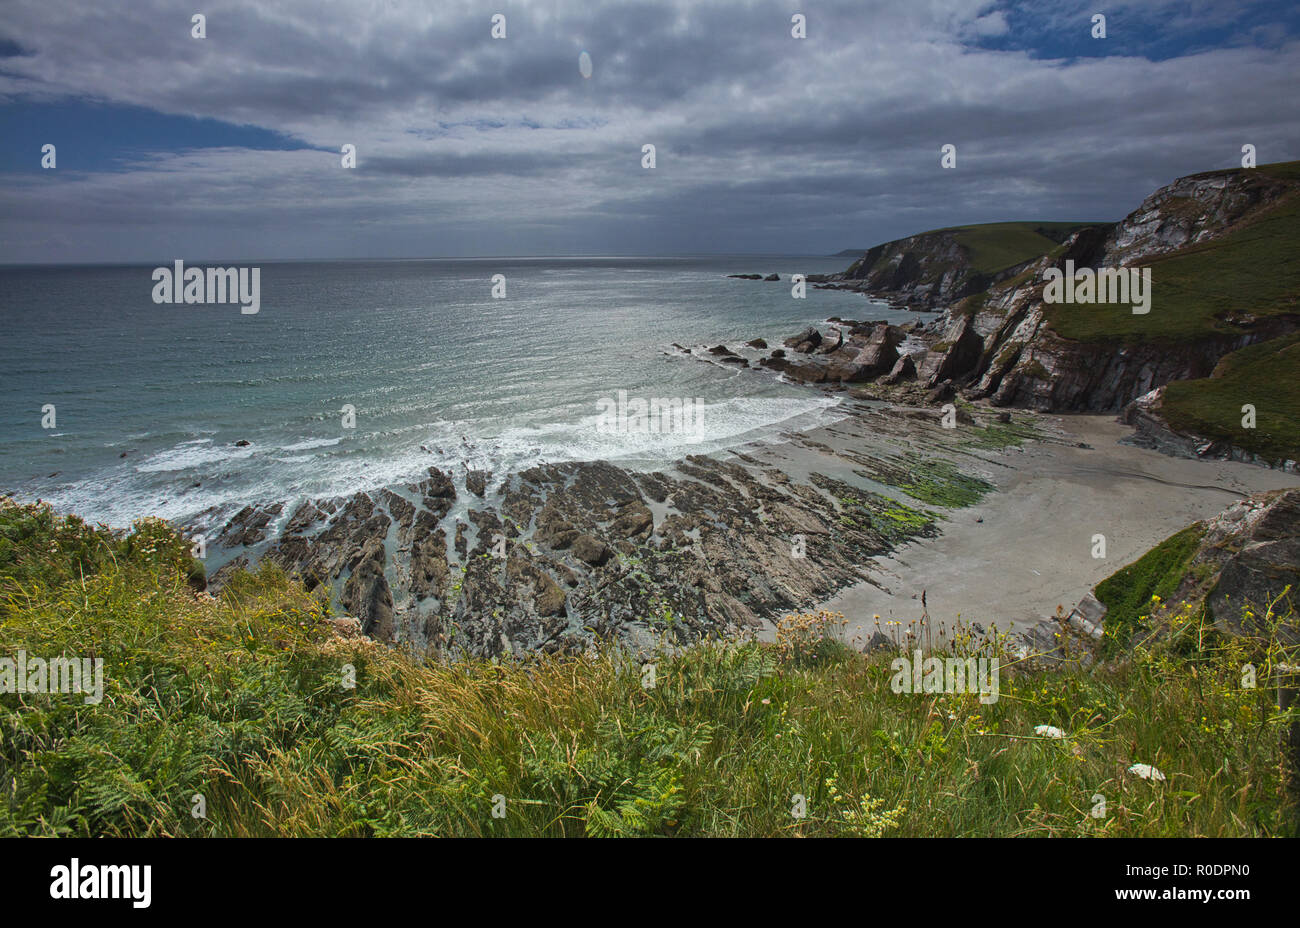 Las vistas de la bahía desde el inicio de la ruta de la costa suroeste, Devon, Inglaterra. Foto de stock